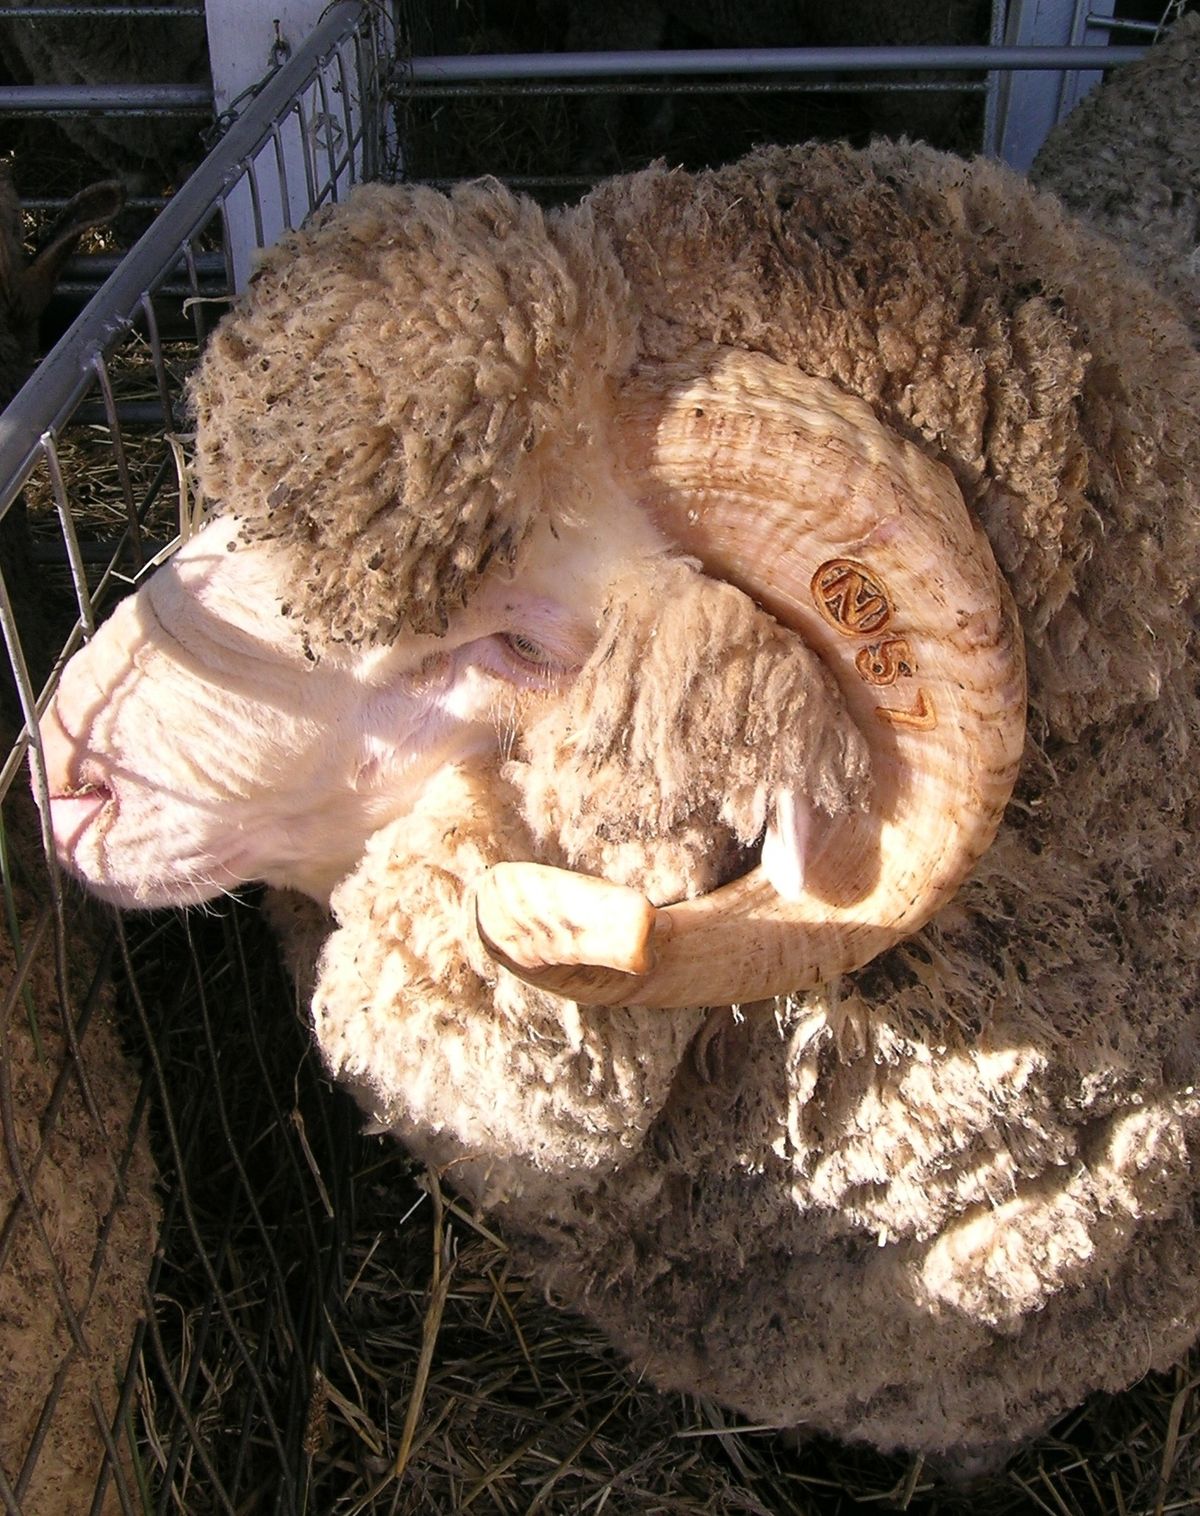 Merino on Australian yleisin lammasrotu.